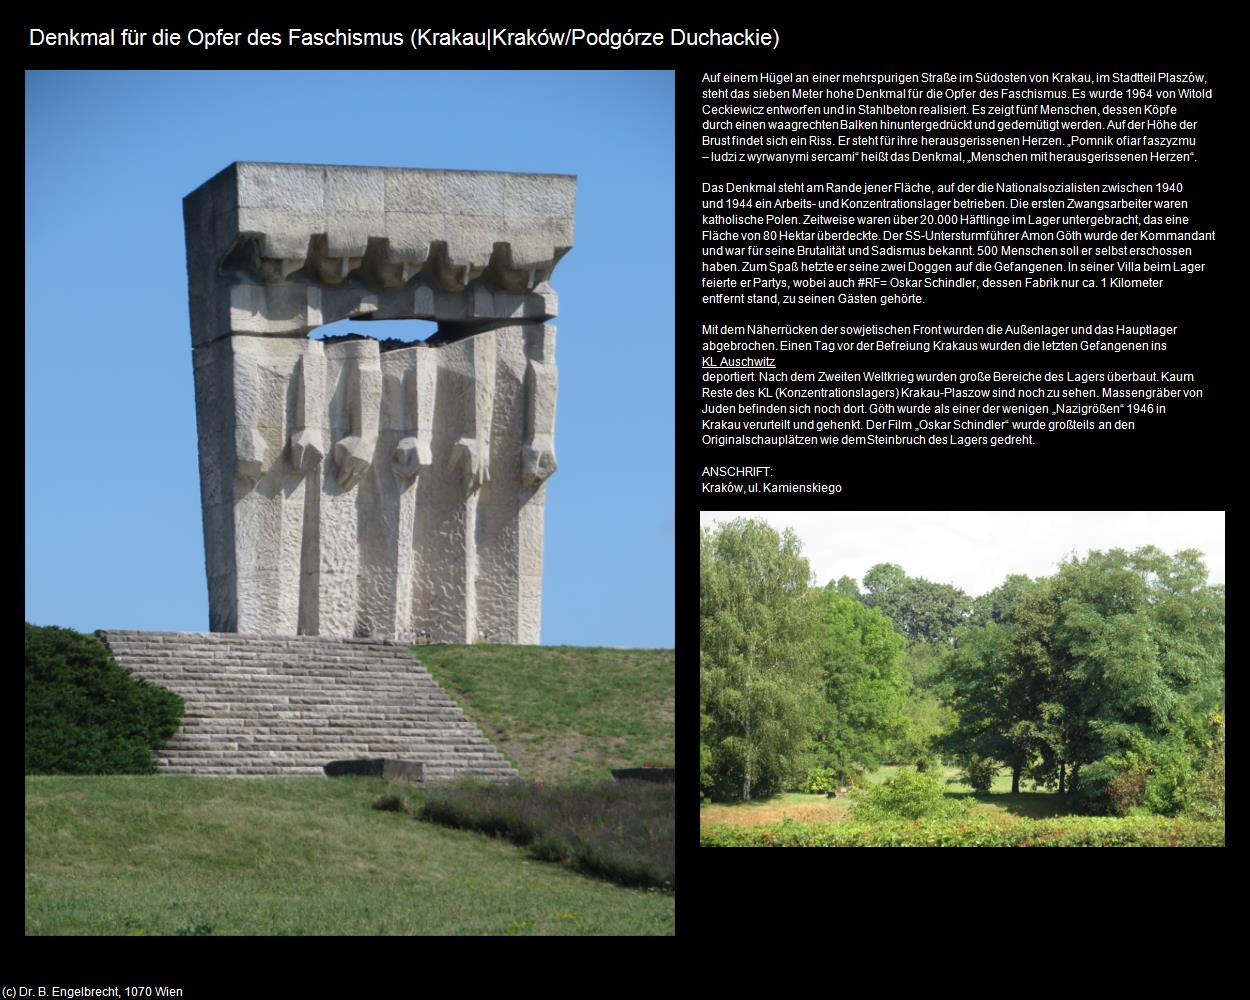 Denkmal für die Opfer des Faschismus (Podgórze Duchackie) (Krakau|Krakow) in POLEN-Galizien(c)B.Engelbrecht